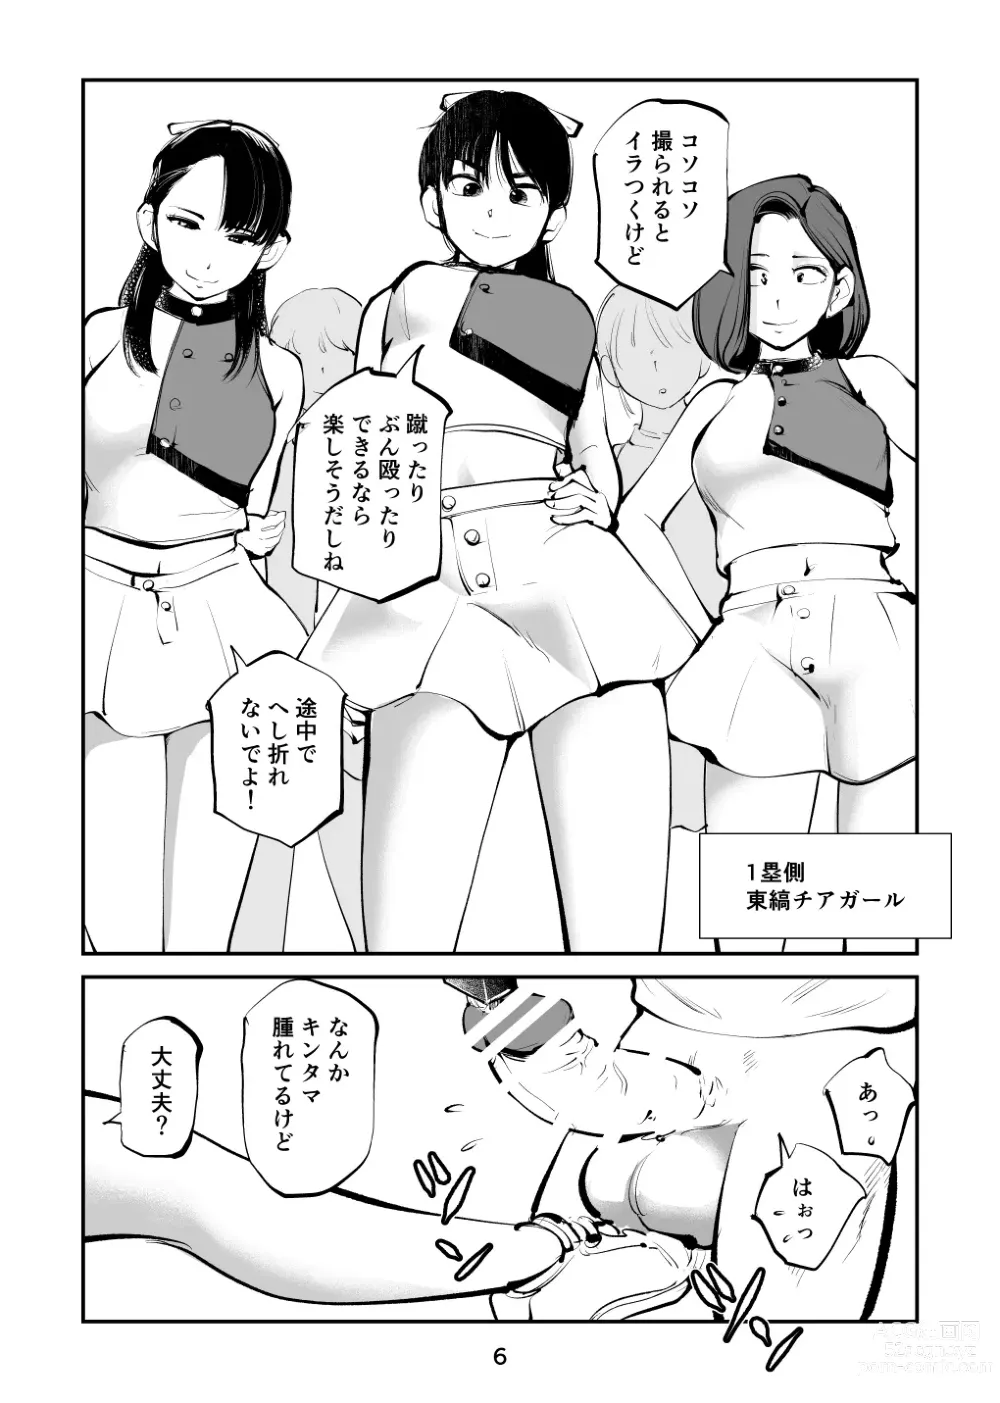 Page 6 of doujinshi Kinkeri Cheer Girl VS Tosatsuma Shakai Hito Cheer Girl-hen